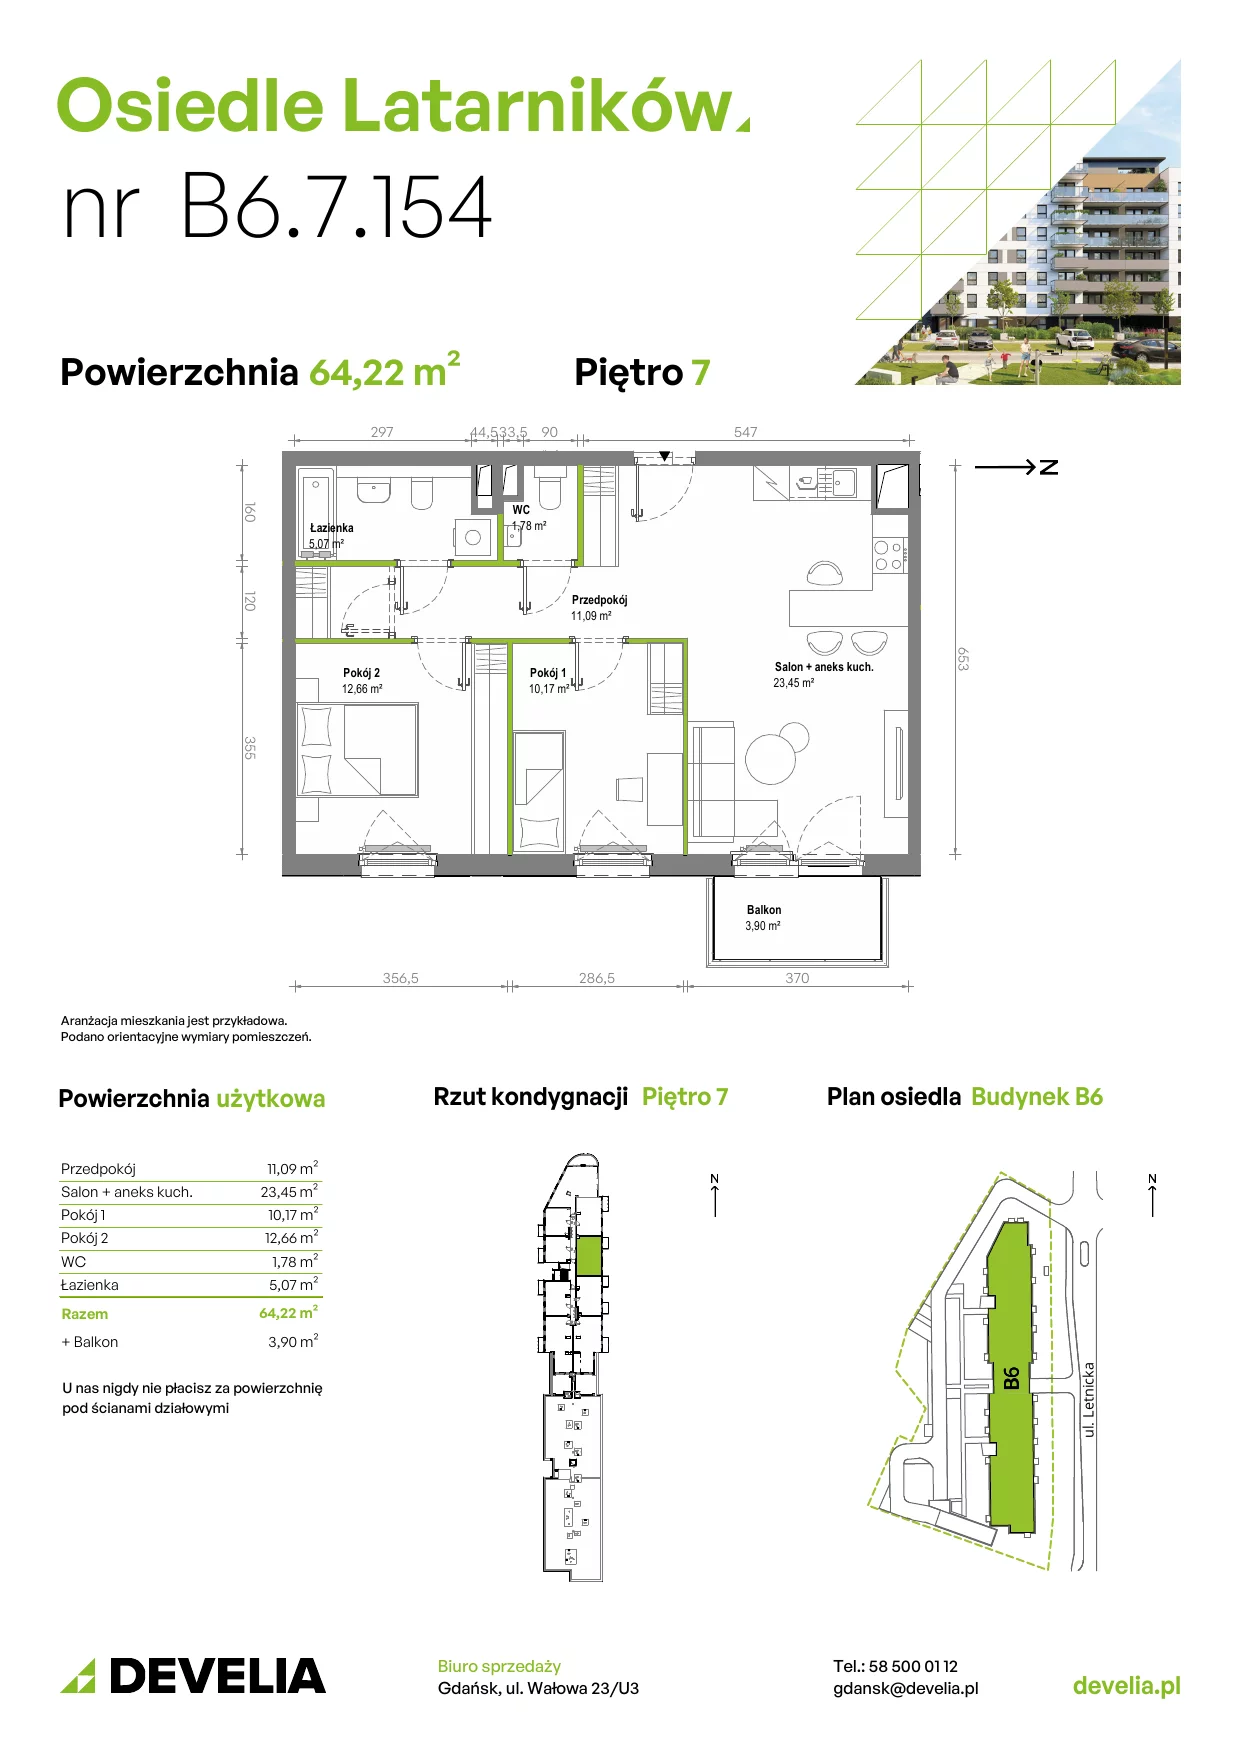 Mieszkanie 64,10 m², piętro 7, oferta nr B6.7.154, Osiedle Latarników, Gdańsk, Letnica, ul. Letnicka 1